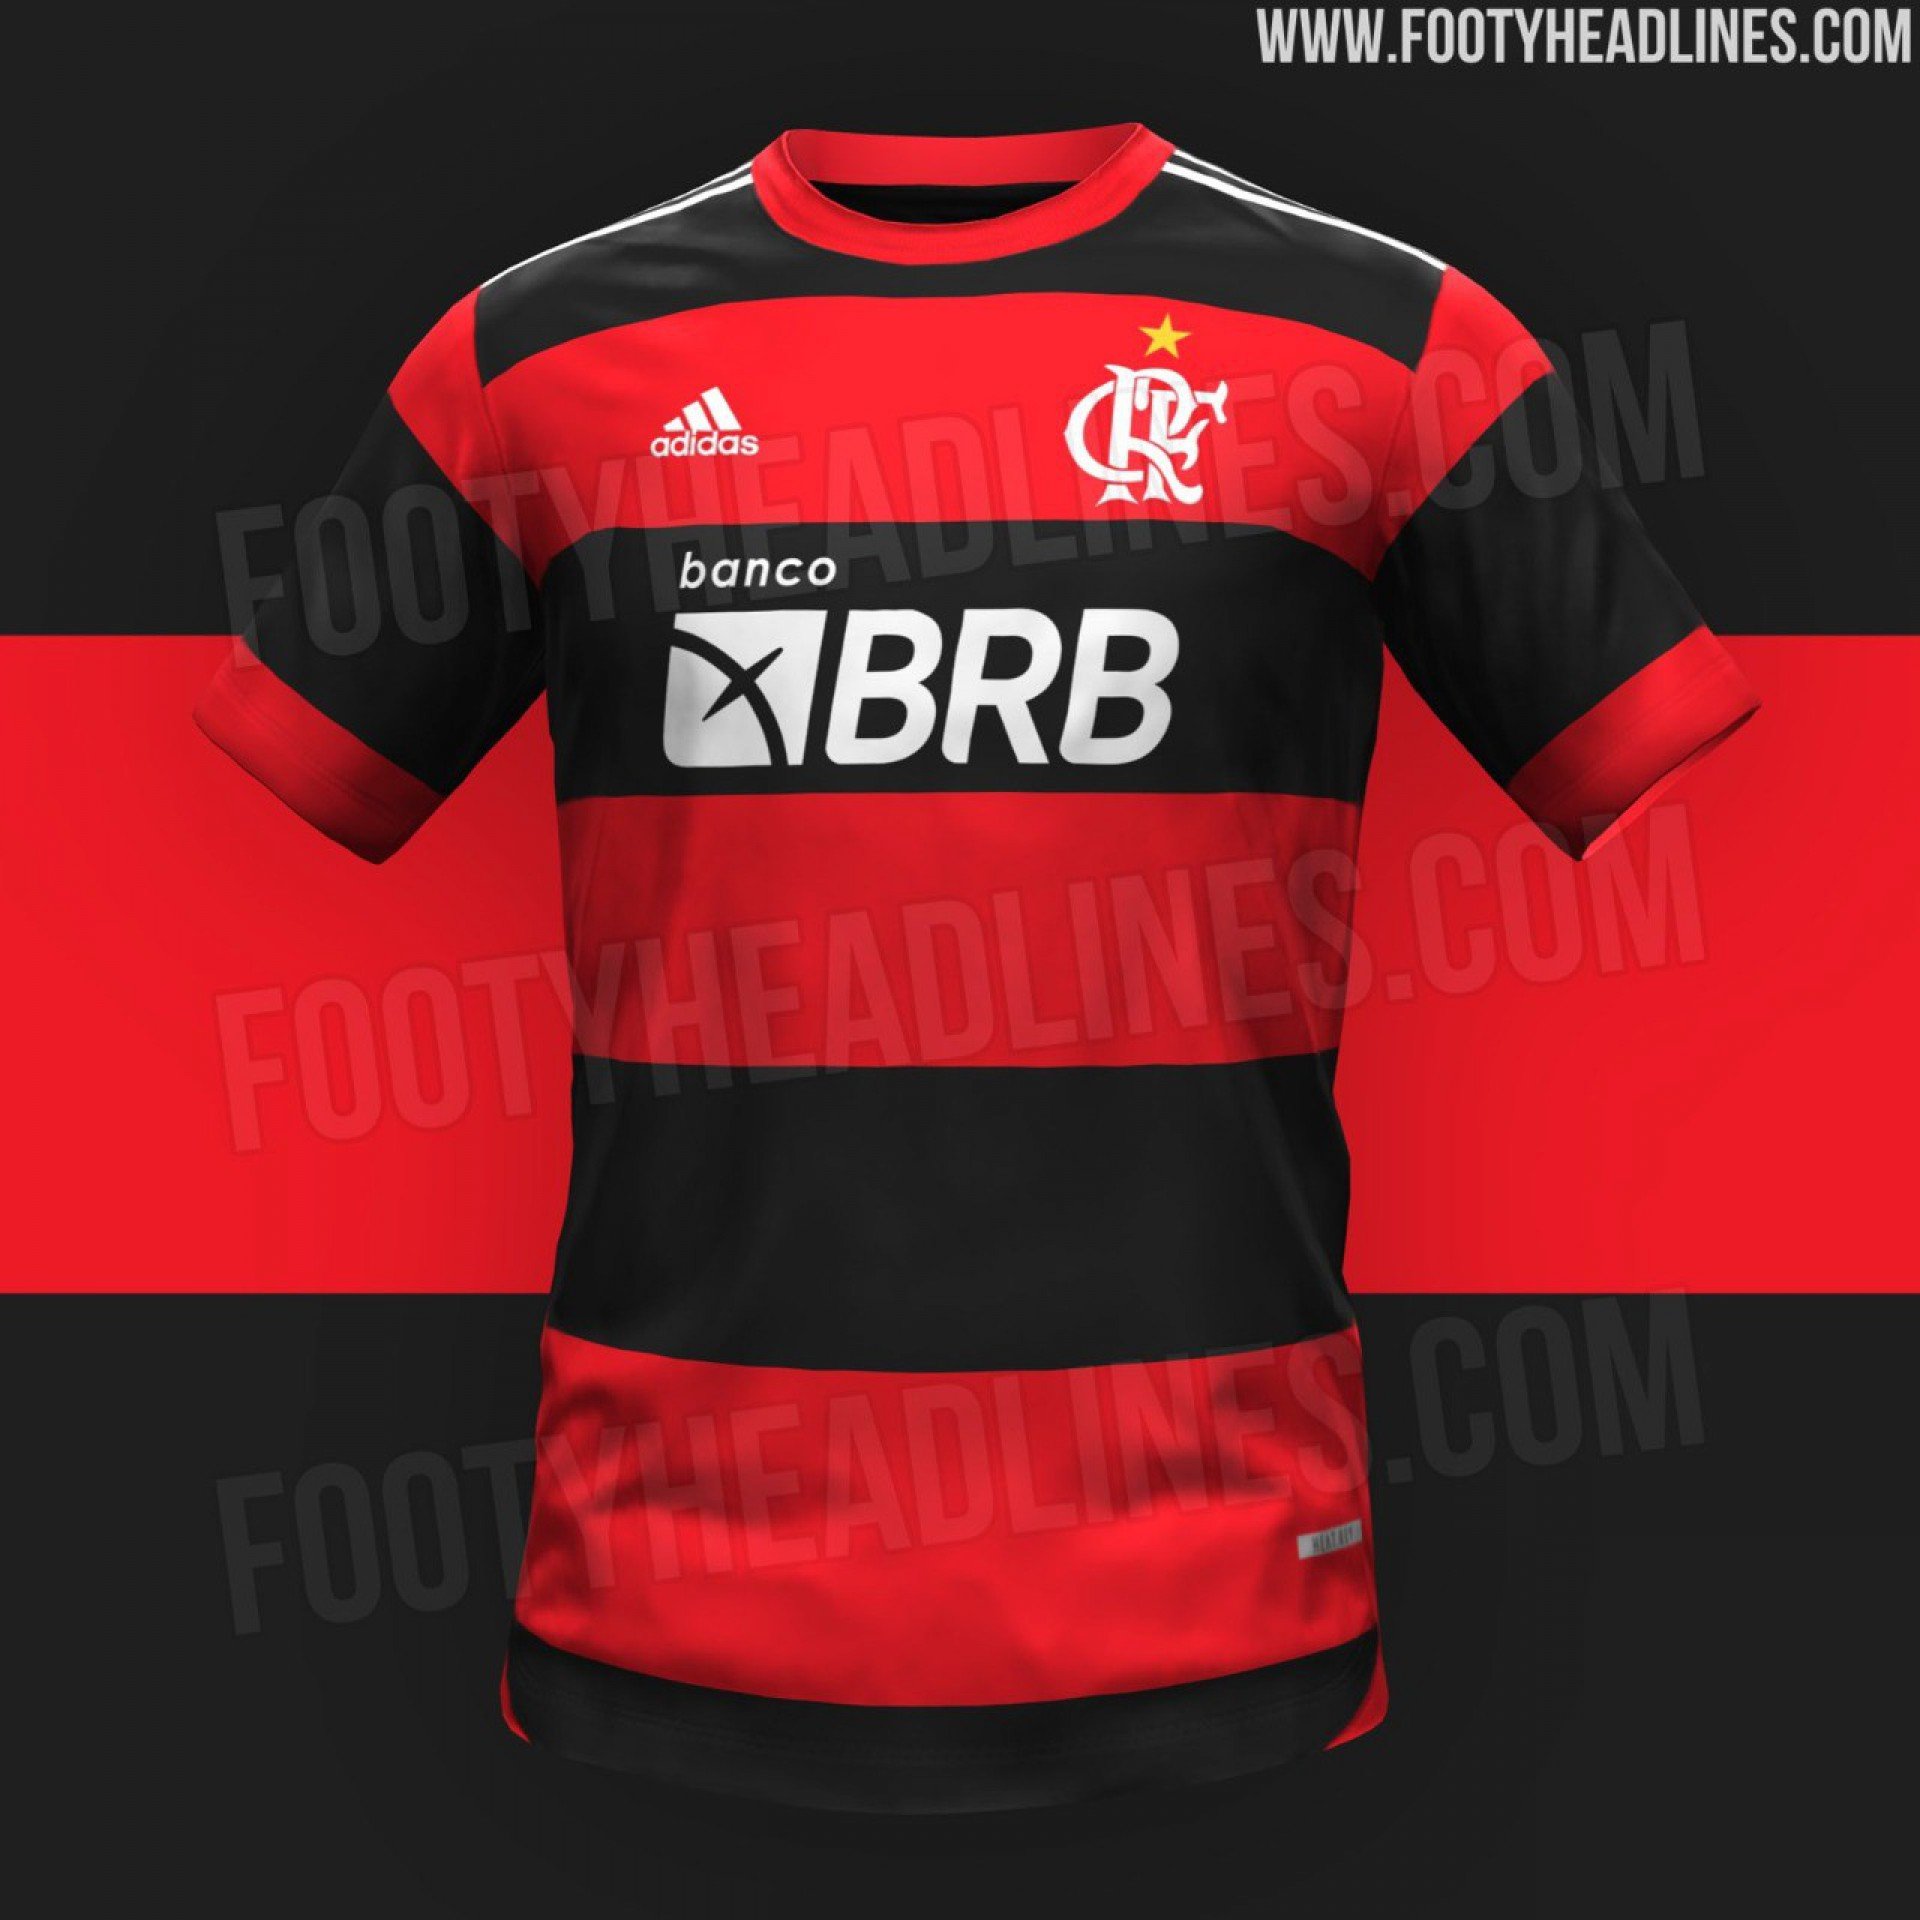 Camisa rubro-negra do Flamengo para 2023 - Reprodução/Footheadlines